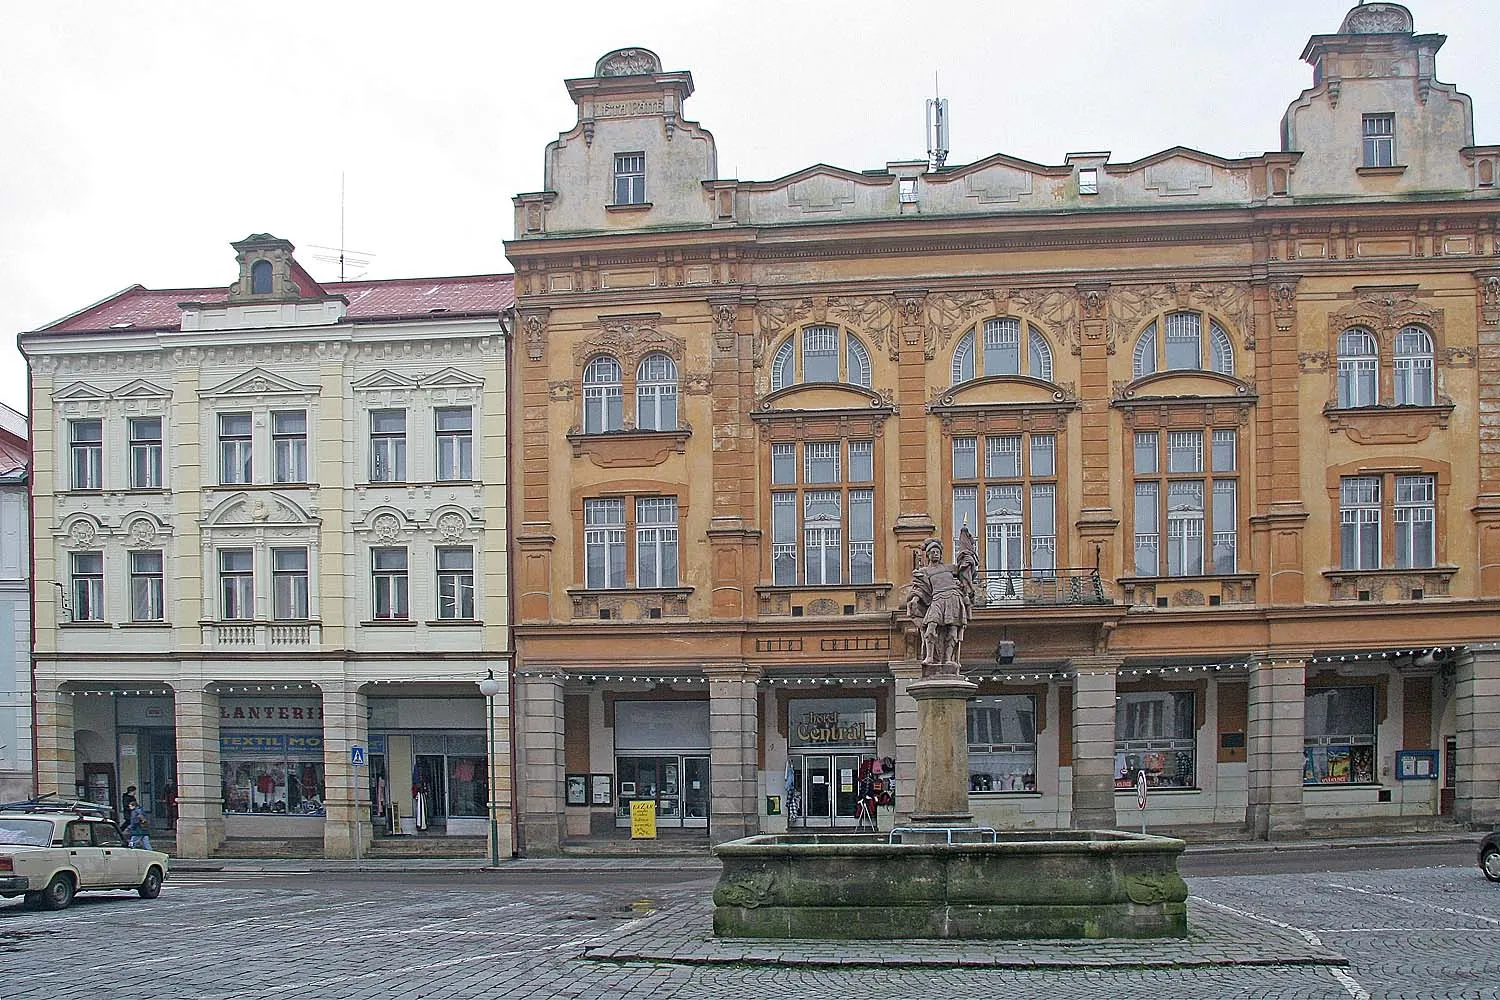 Photo showing: Nová Paka - Kašna na náměstí, district Jičín
autor: Prazak

date: 2. 1. 2007